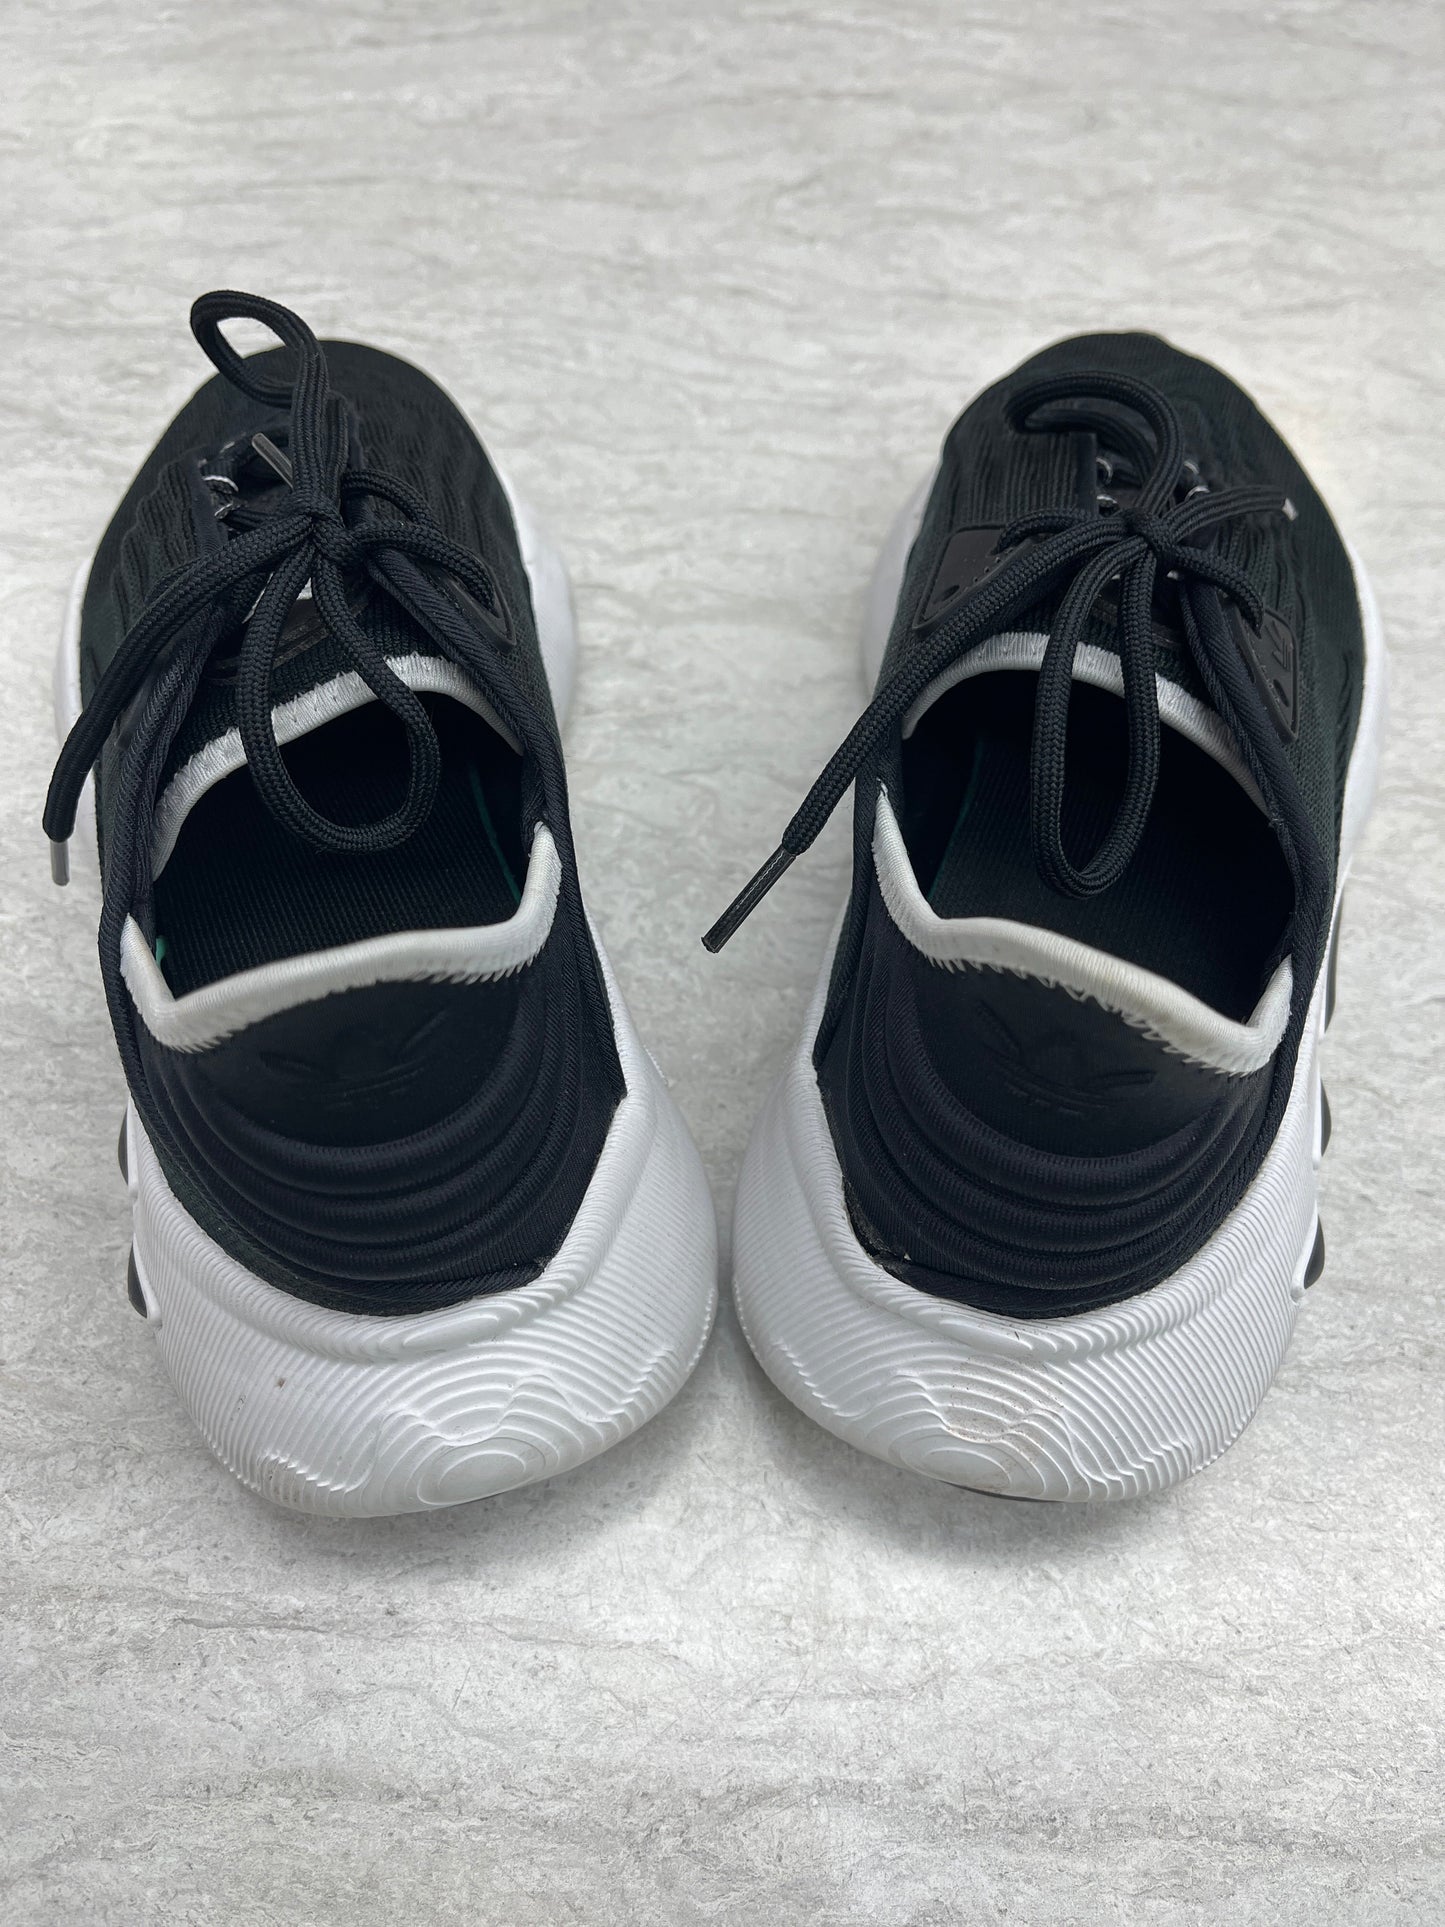 Black & White Shoes Athletic Adidas, Size 6